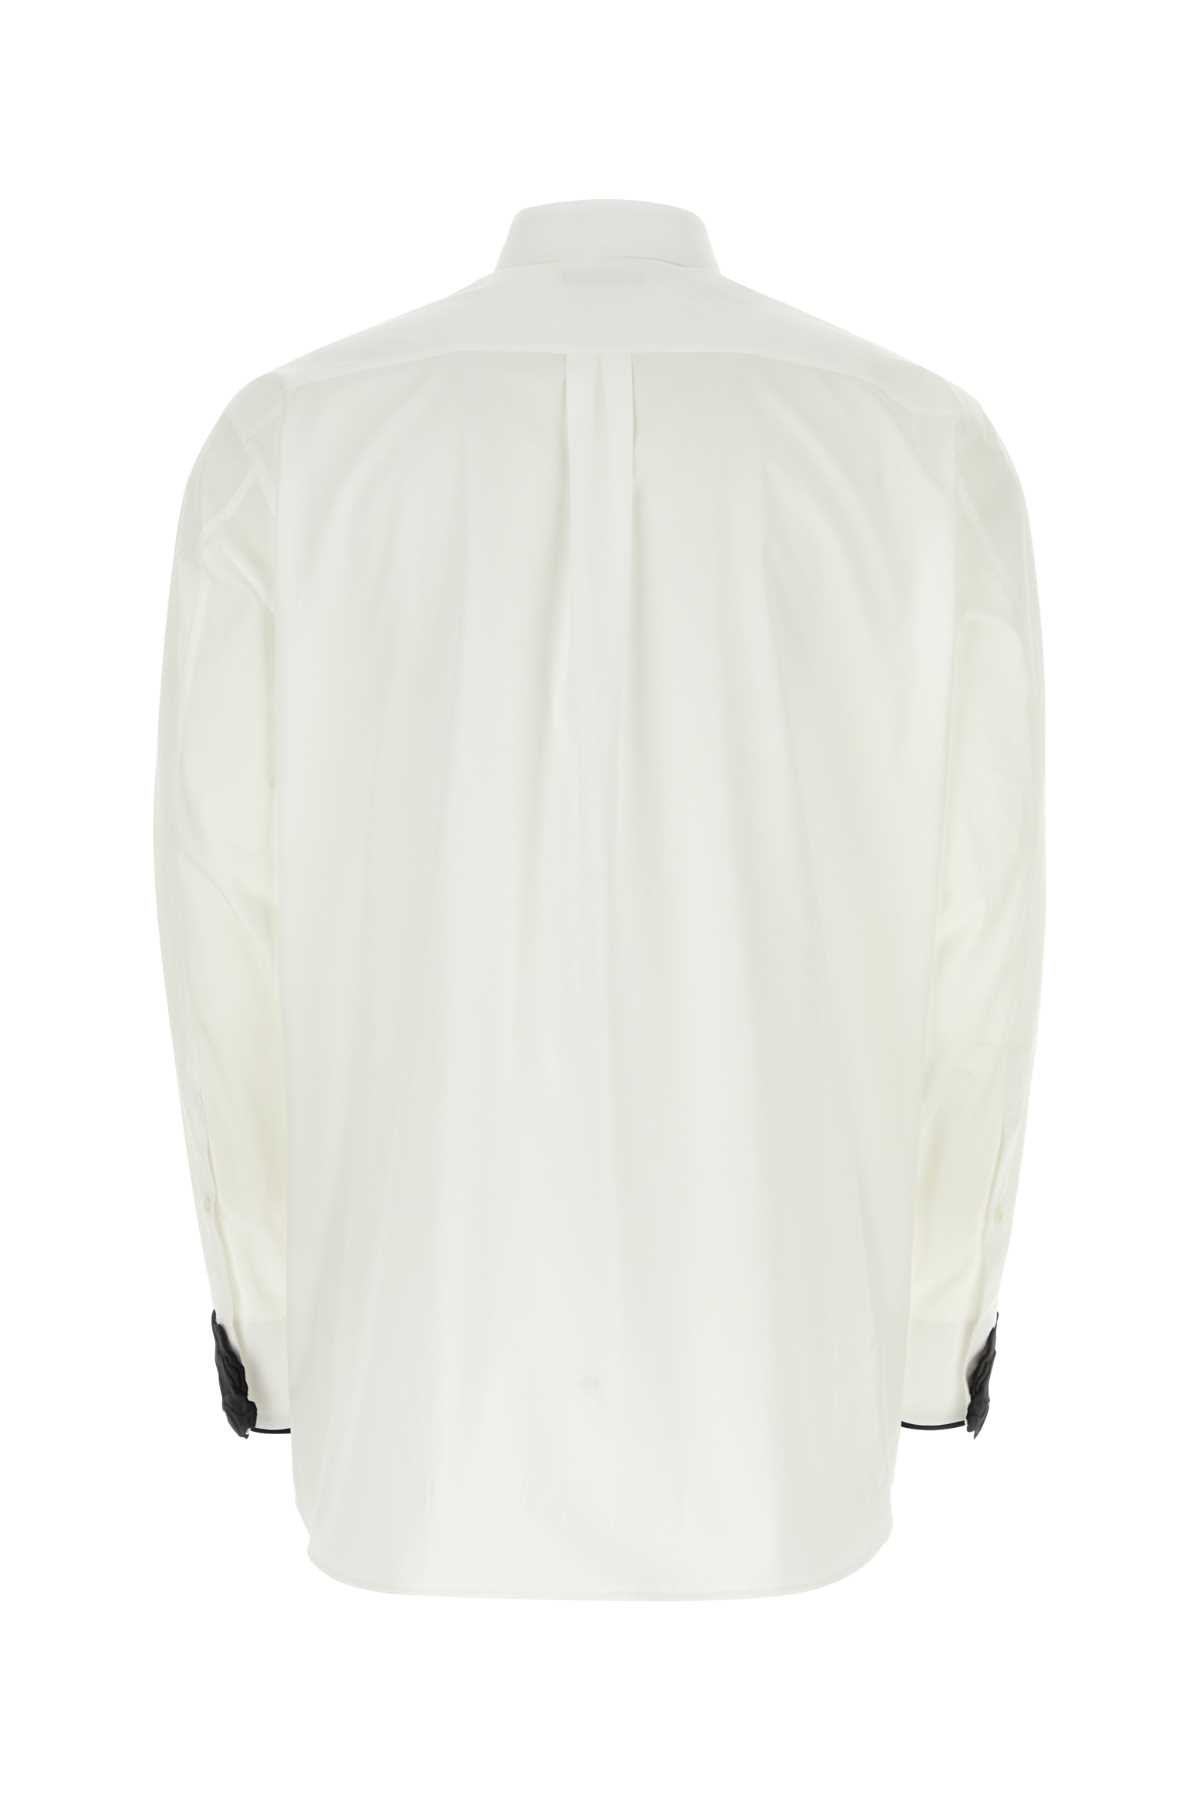 Valentino White Poplin Shirt